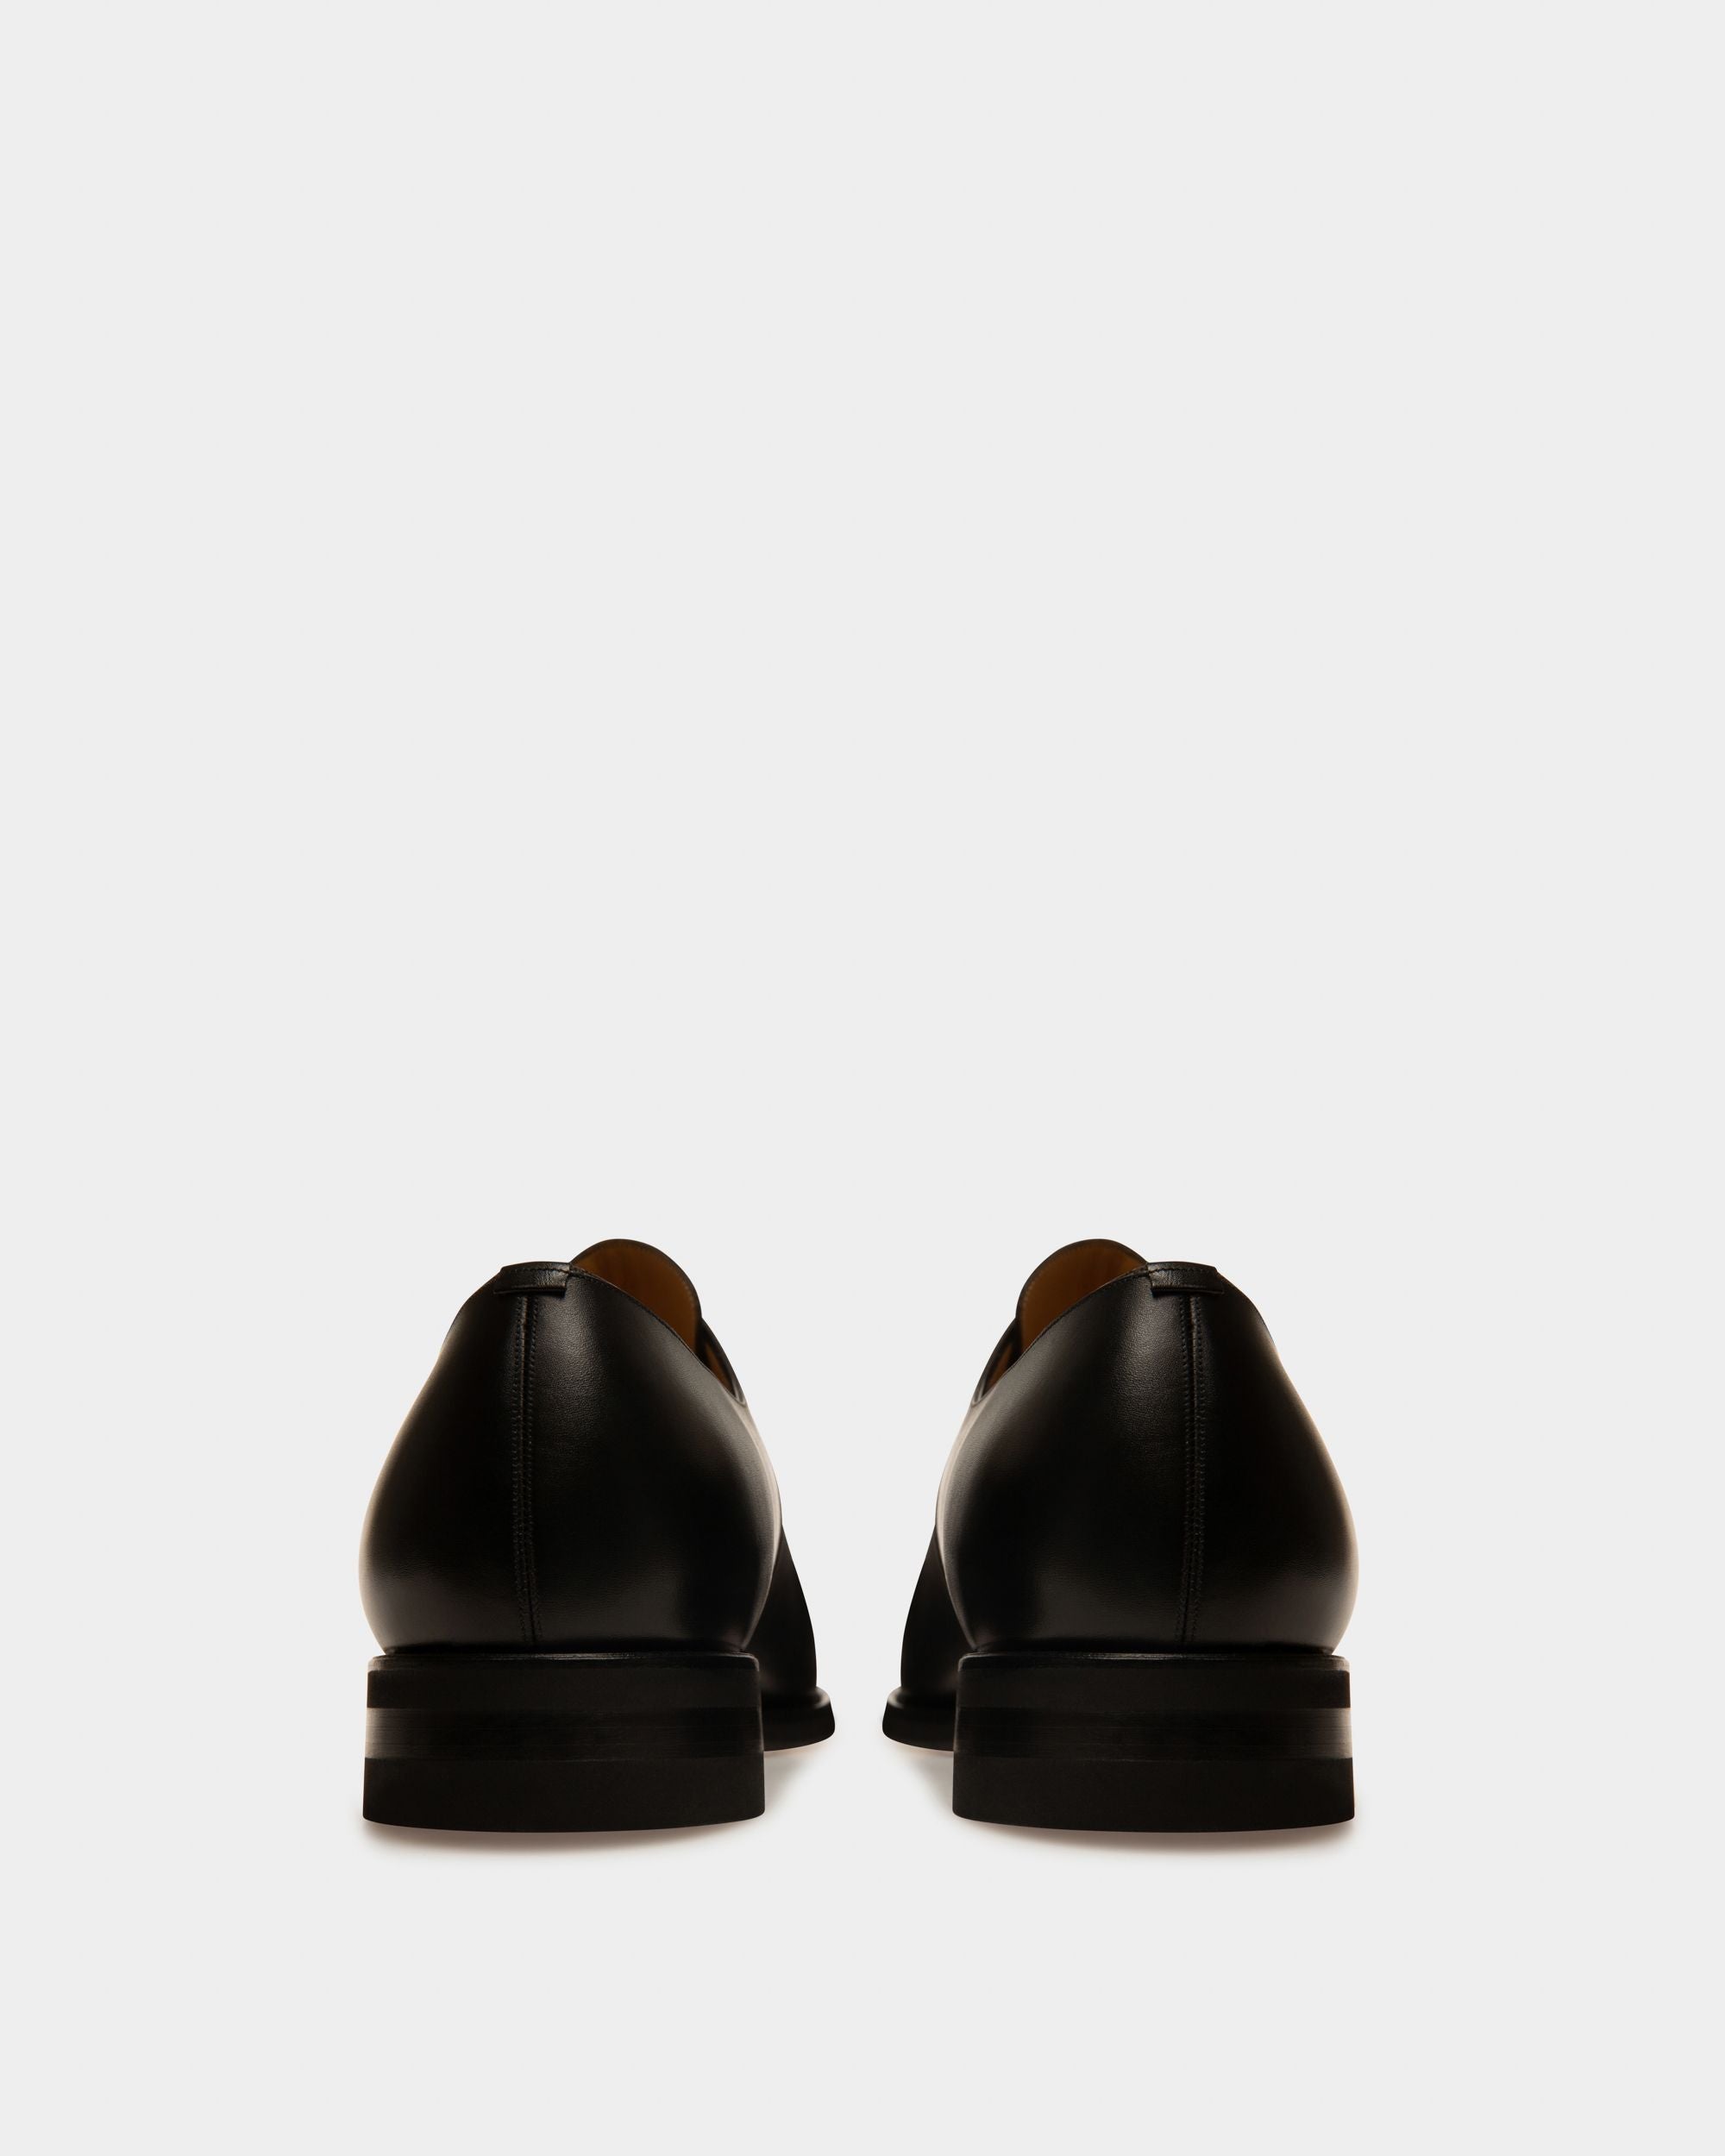 バリー／BALLY シューズ ビジネスシューズ 靴 ビジネス メンズ 男性 男性用レザー 革 本革 ブラック 黒  SCARDINO グッドイヤーウェルテッド製法 ダブルモンクストラップ キャップトゥ レザーソール